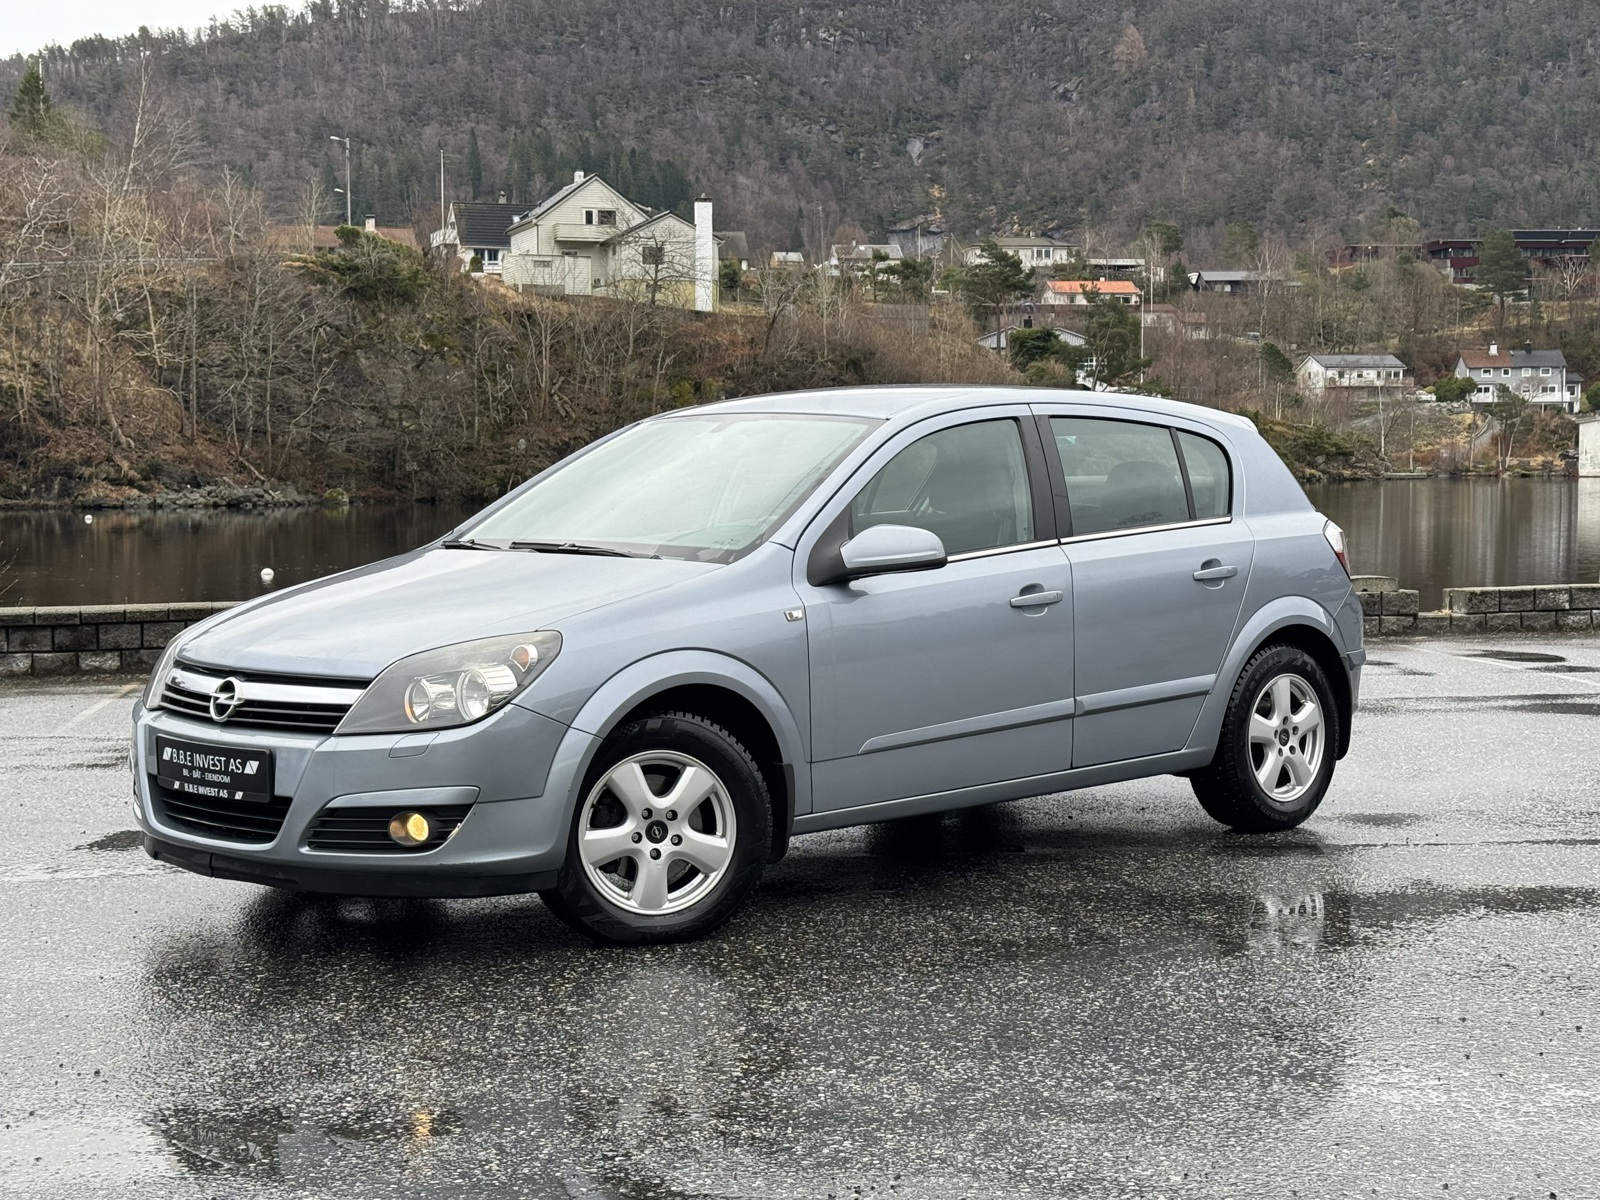 Bilde av 'Opel Astra 2004'